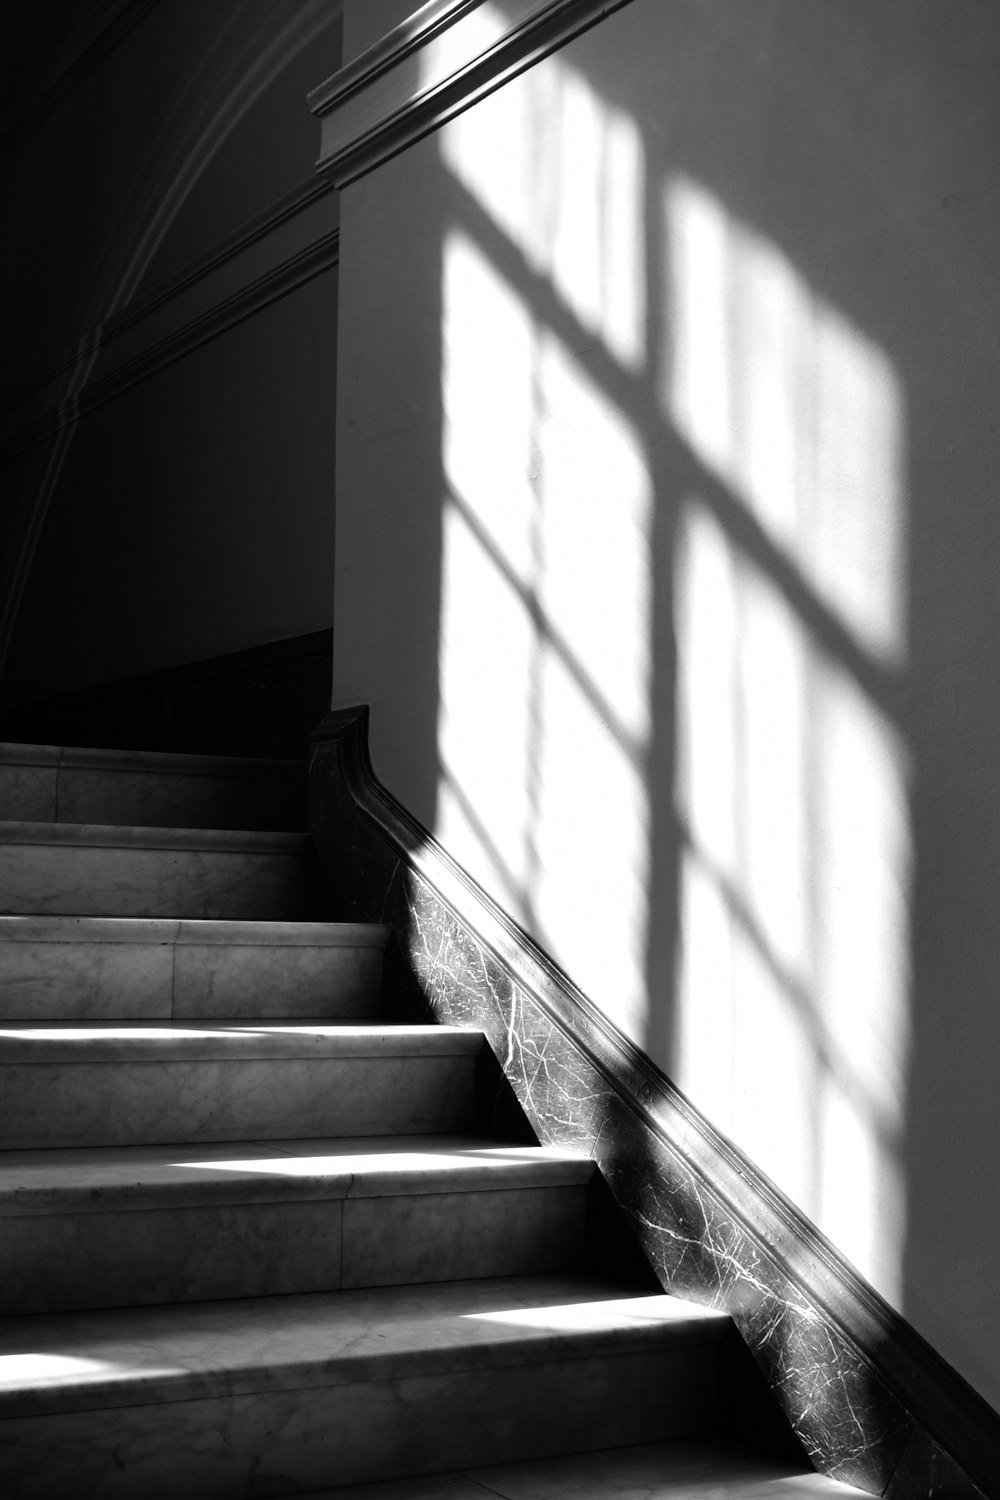 une photo en noir et blanc de quelques escaliers